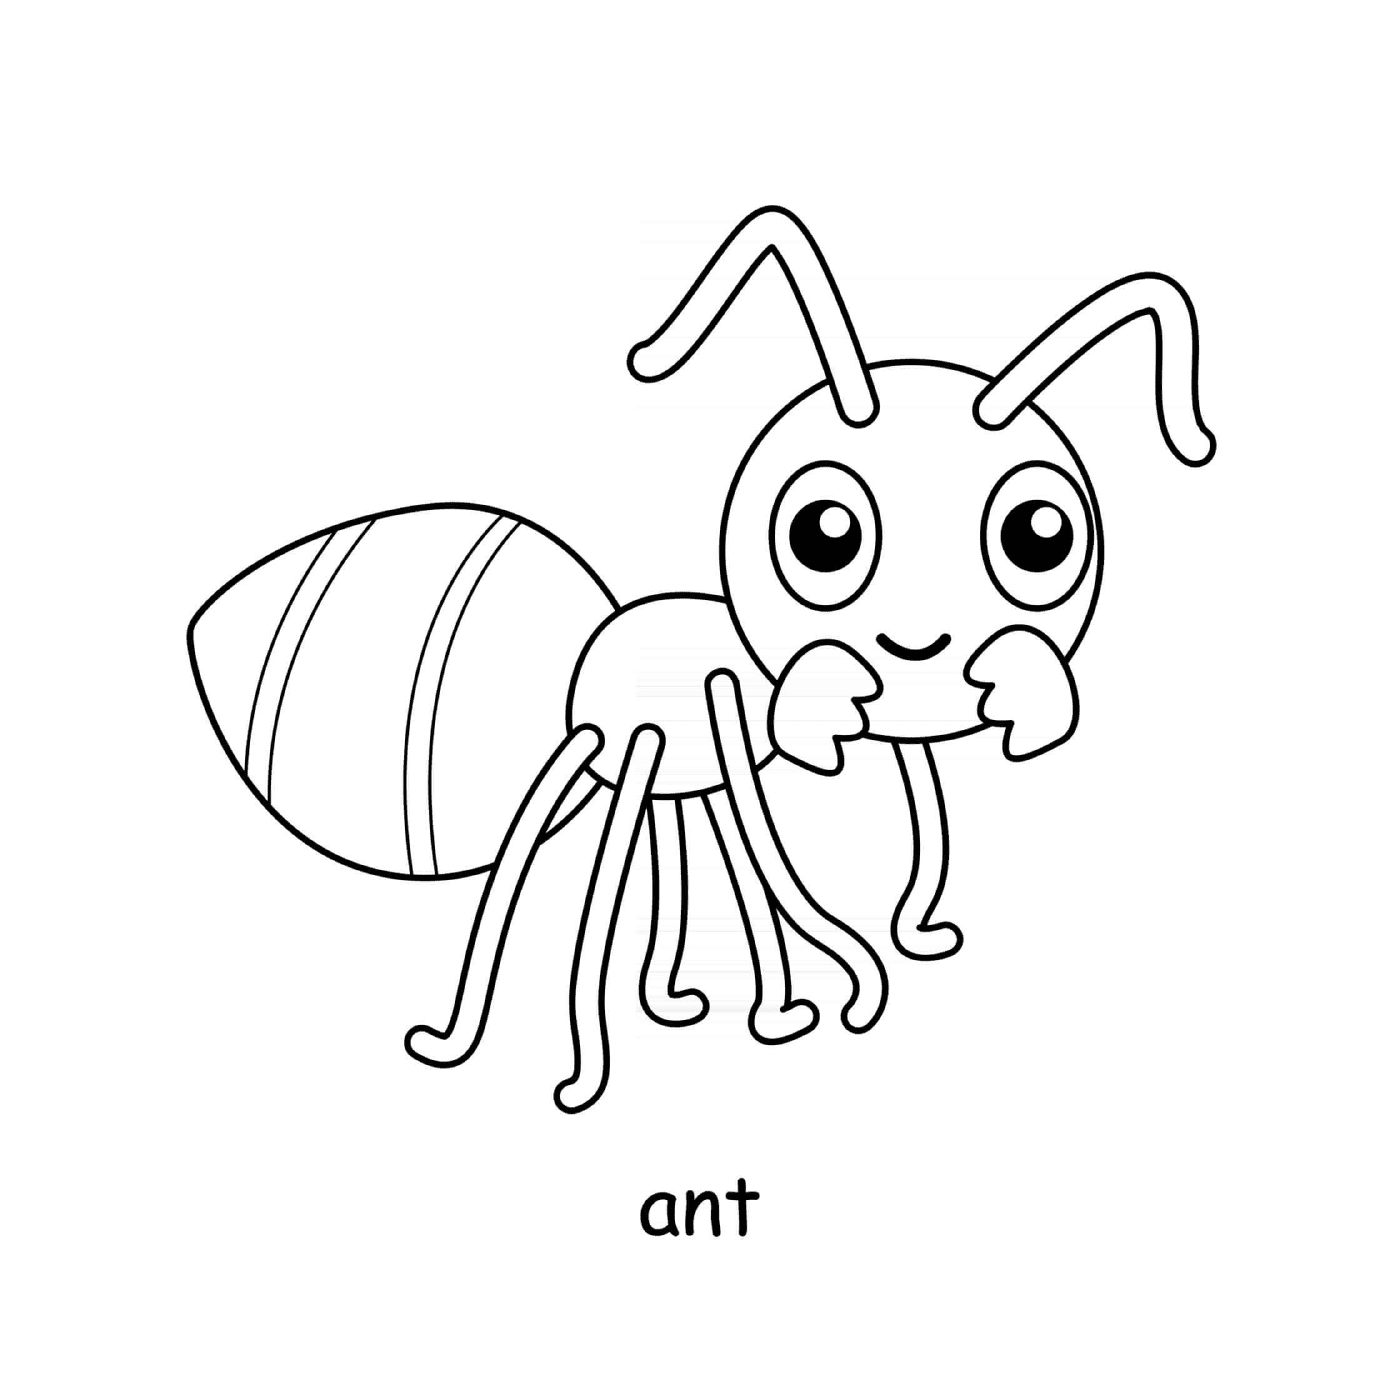  ant 